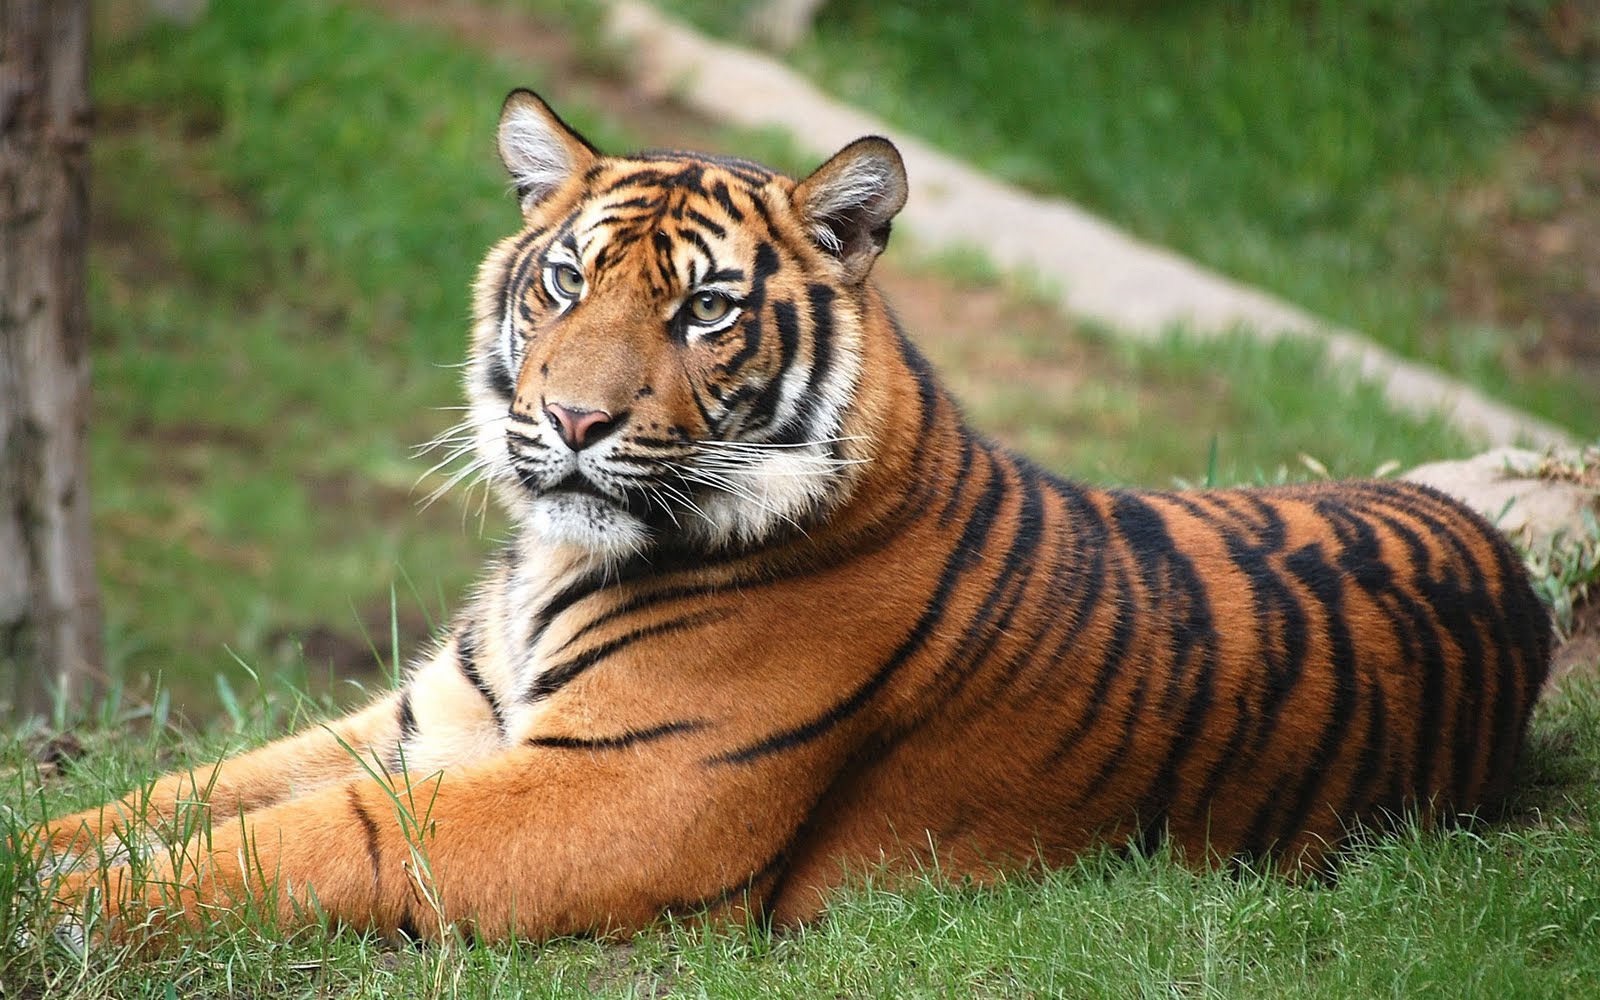 Fotos de animales: Coleccion de fotos de tigres